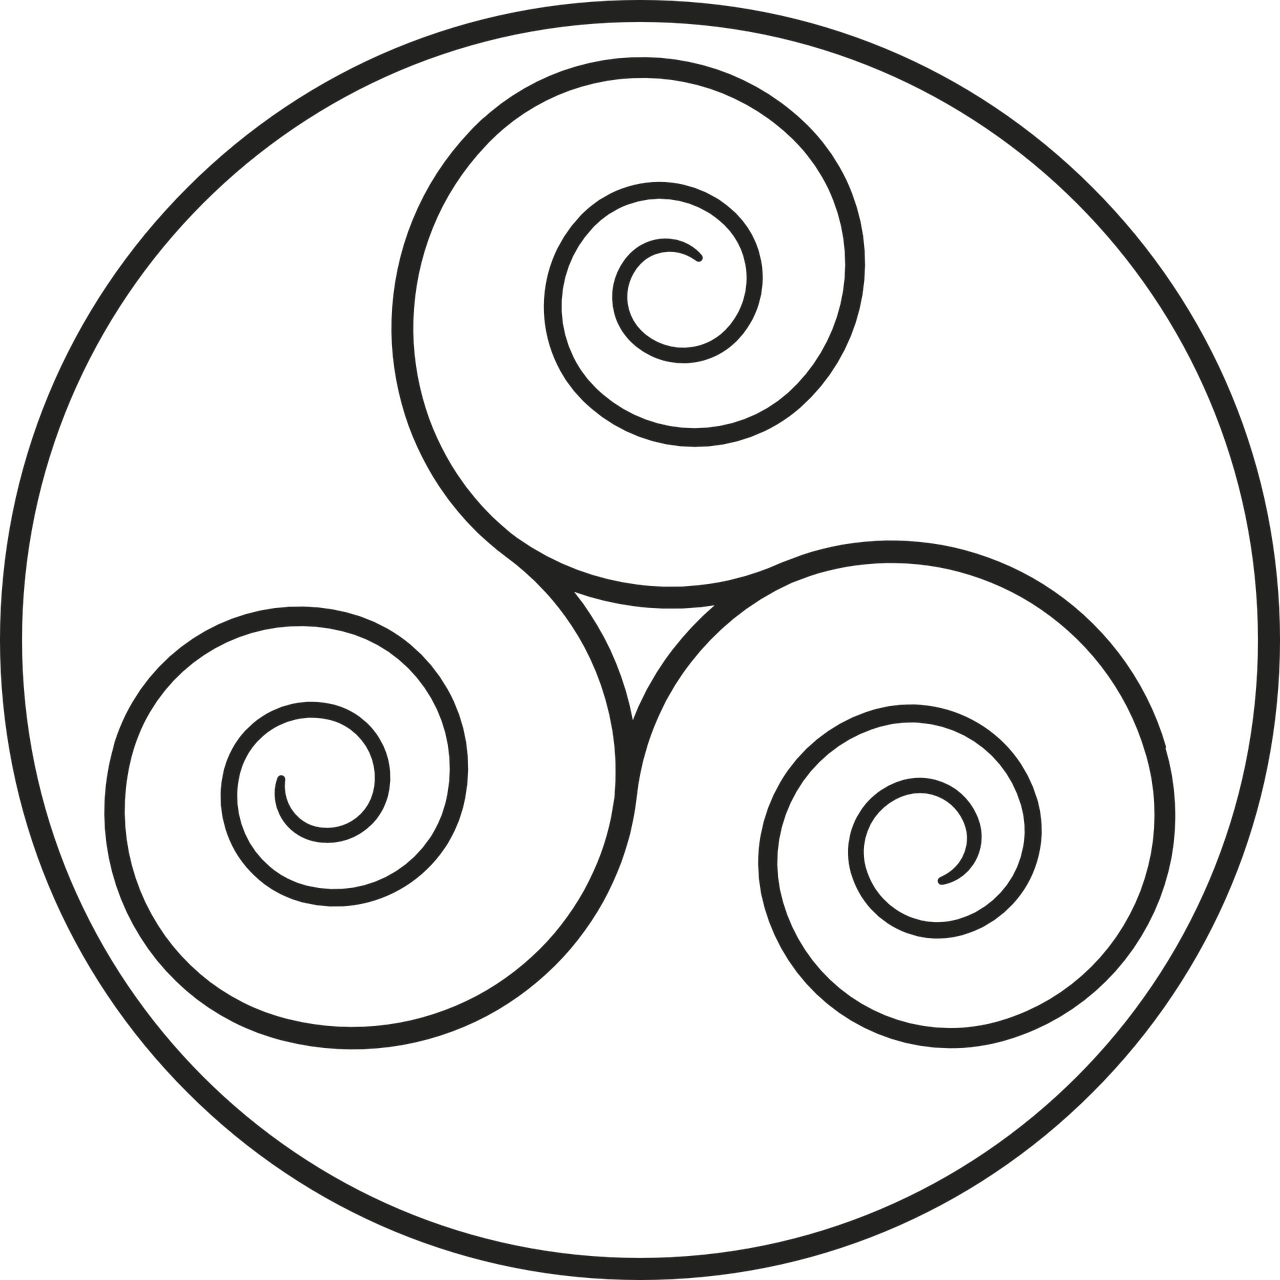 celtic symbol for family